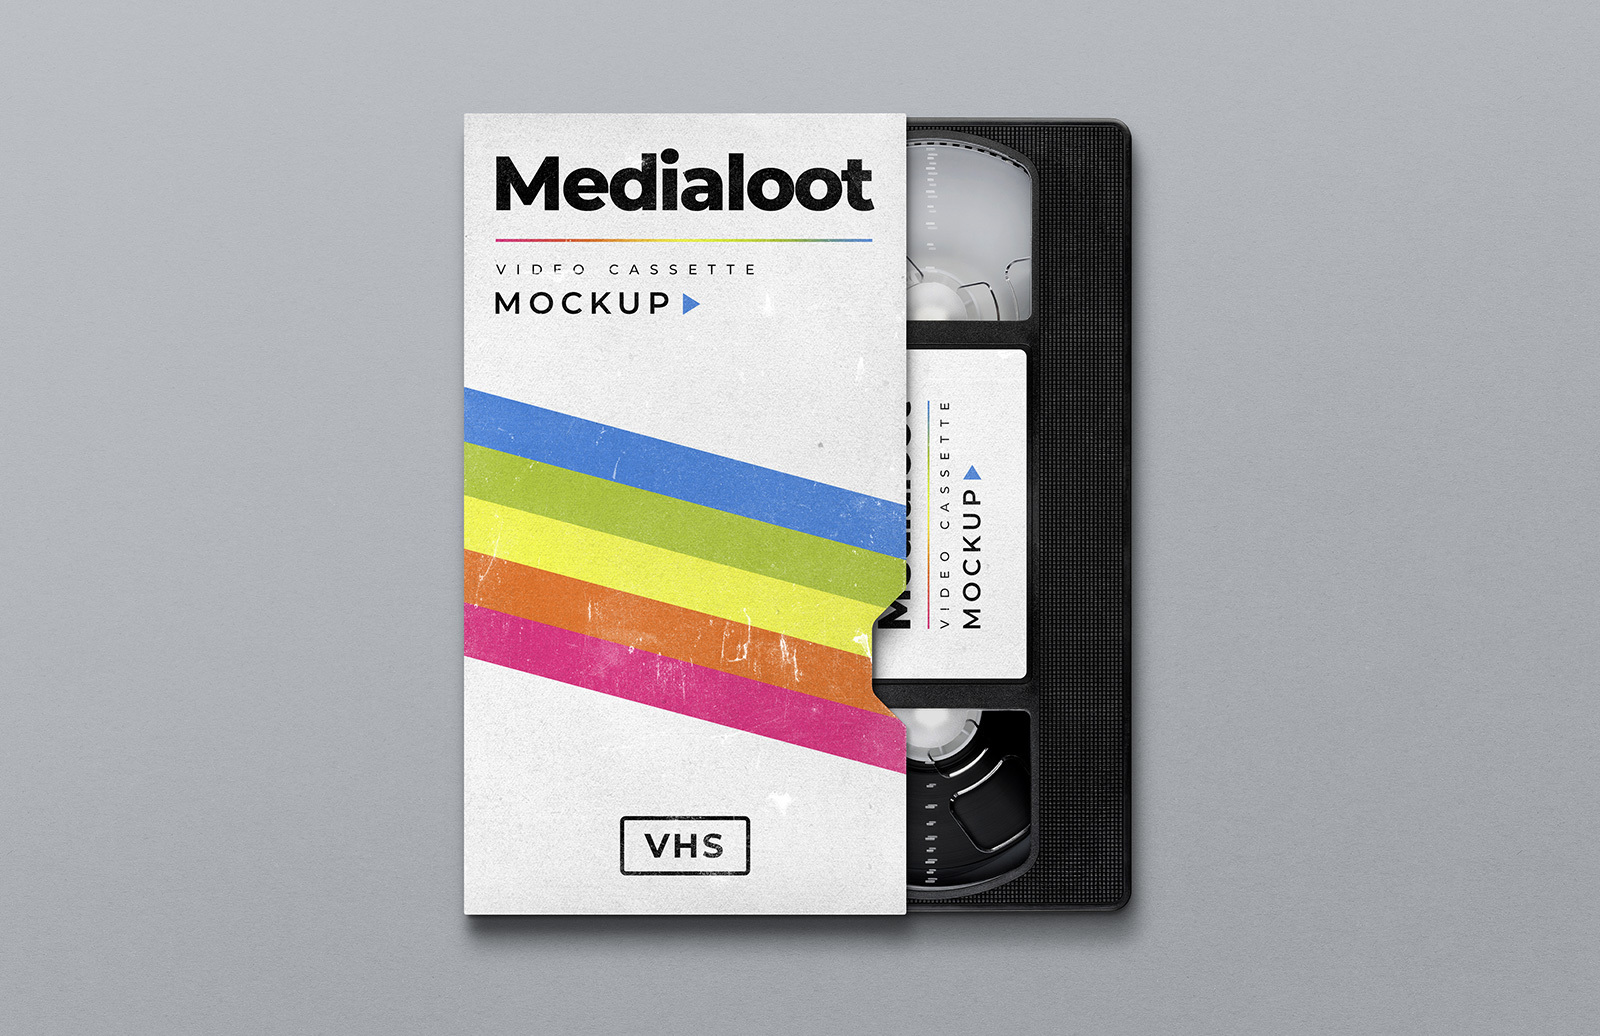 Download Vhs Cassette Cover Mockup Medialoot